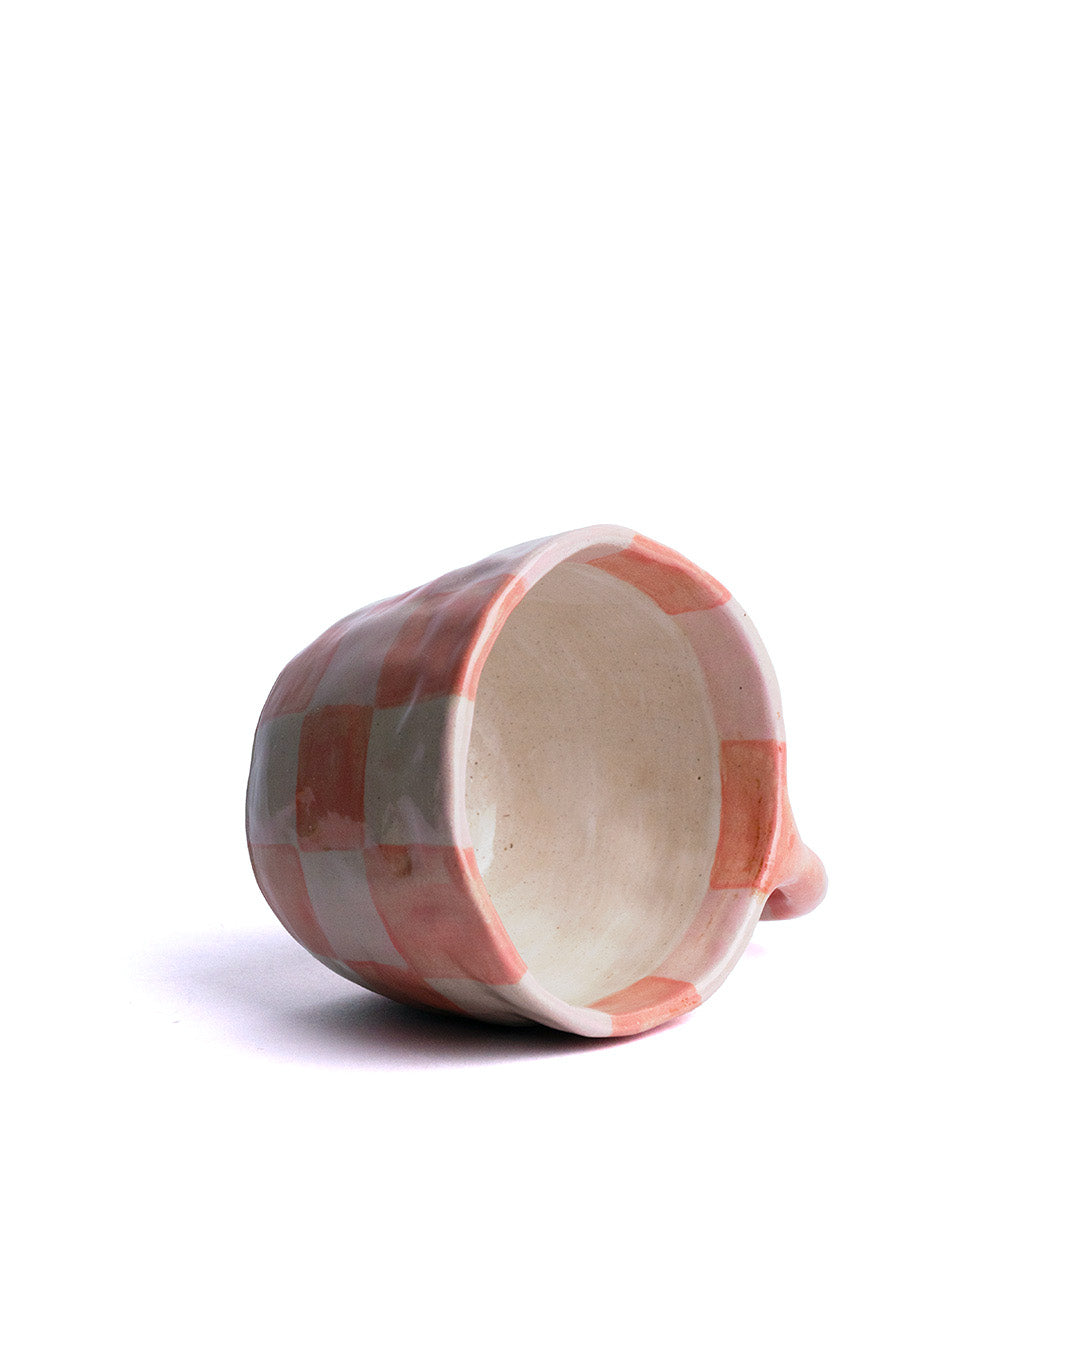 Daily dose ceramics Checkers Mug